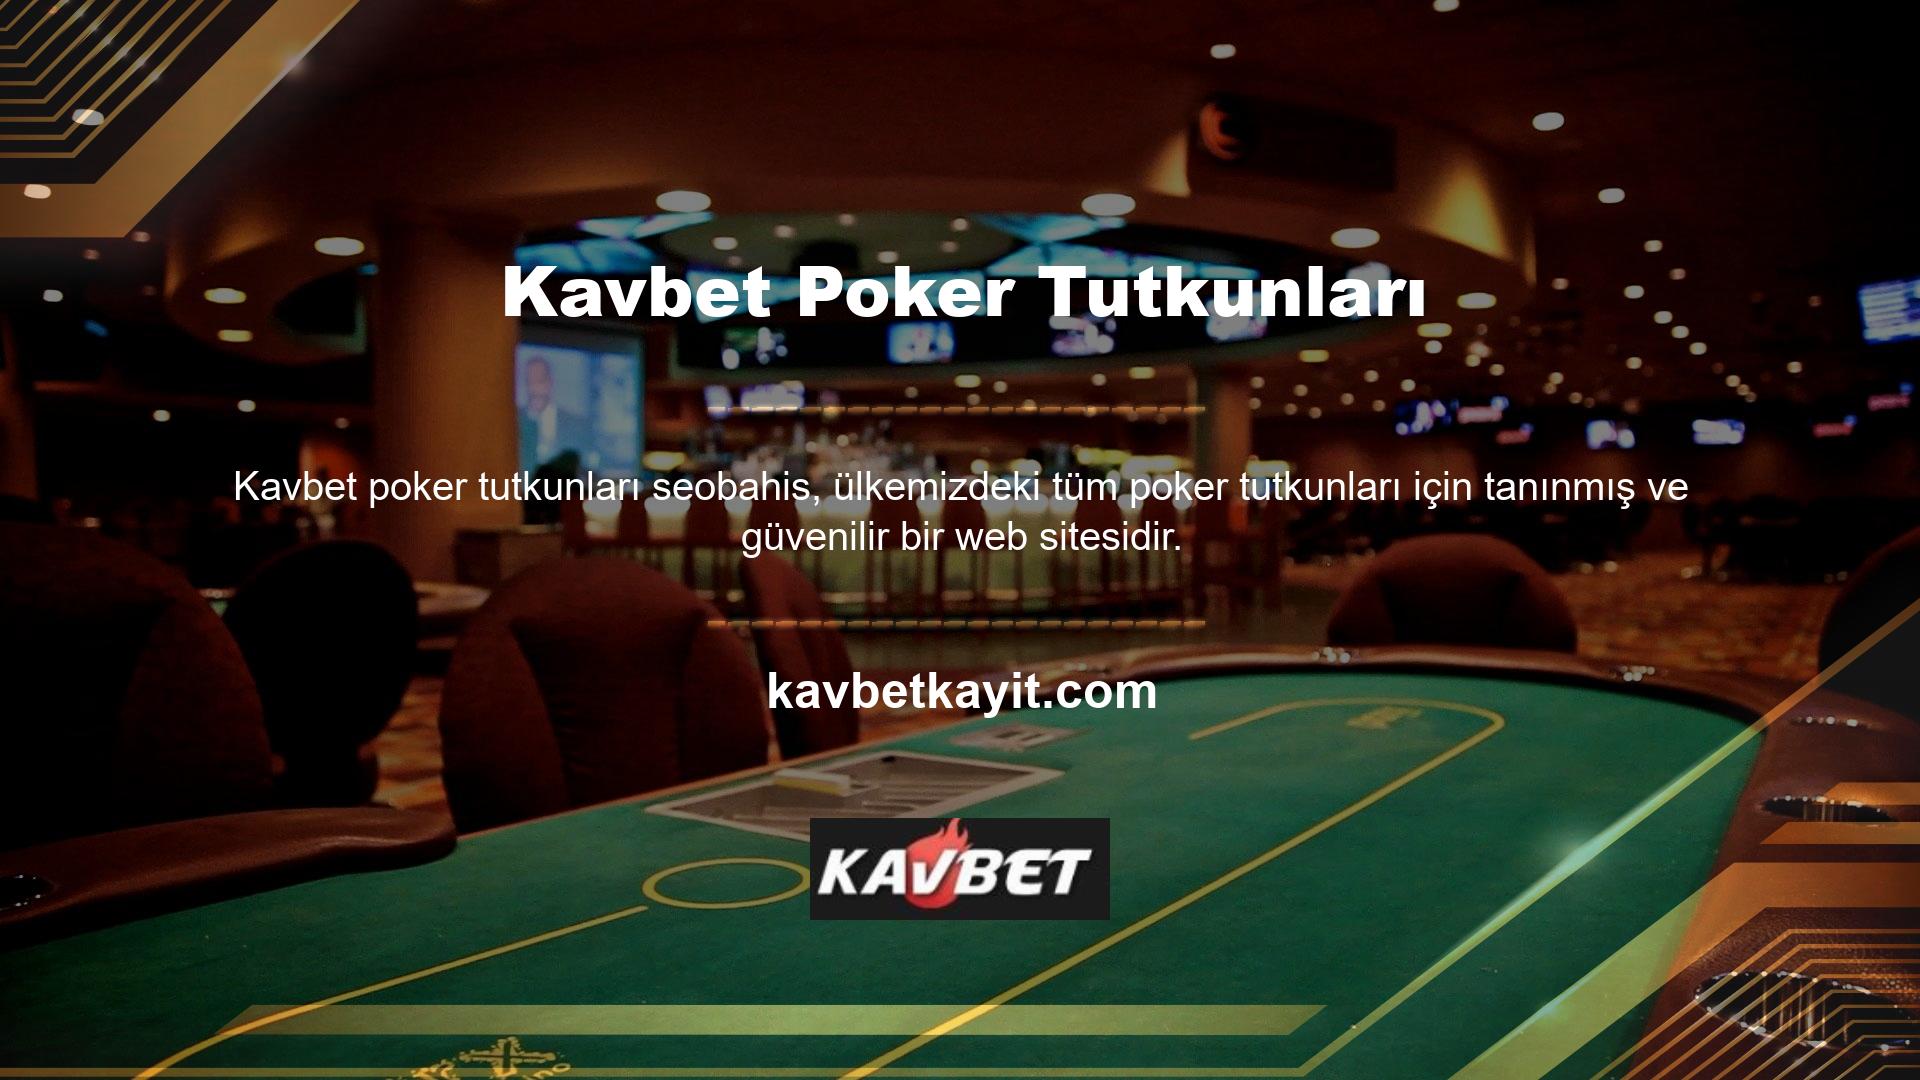 Türkiye’de Casino oynanmasına izin verilmeyen siteler nelerdir? Bugün Türkiye’nin gündemindeki en güvenli kitabı sorgulayan çok sayıda kişi var